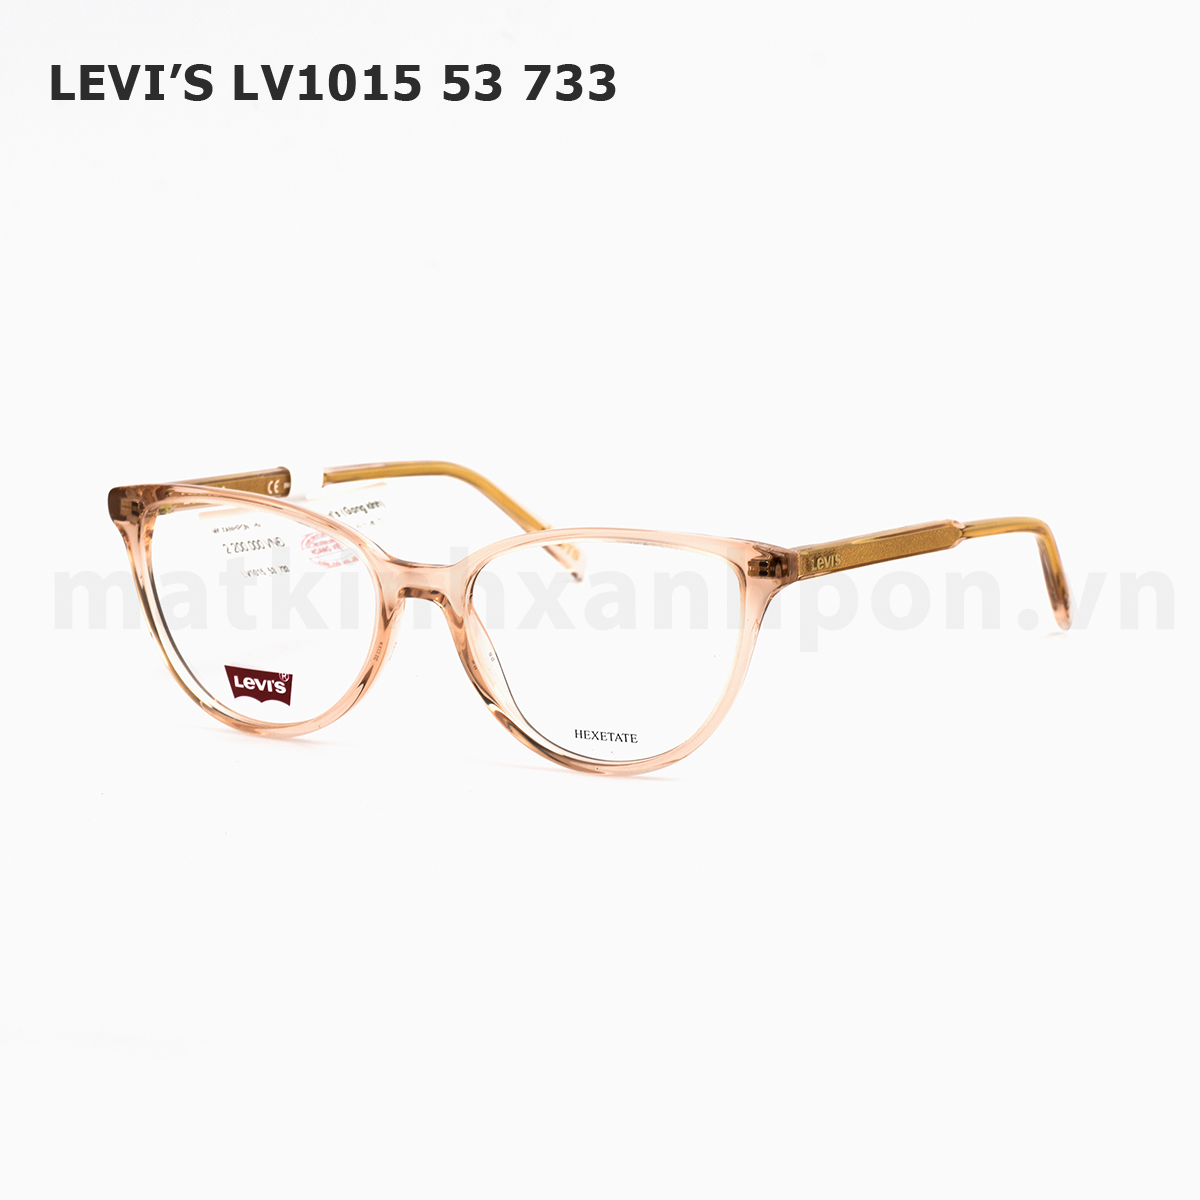 Levi’s LV1015 53 733